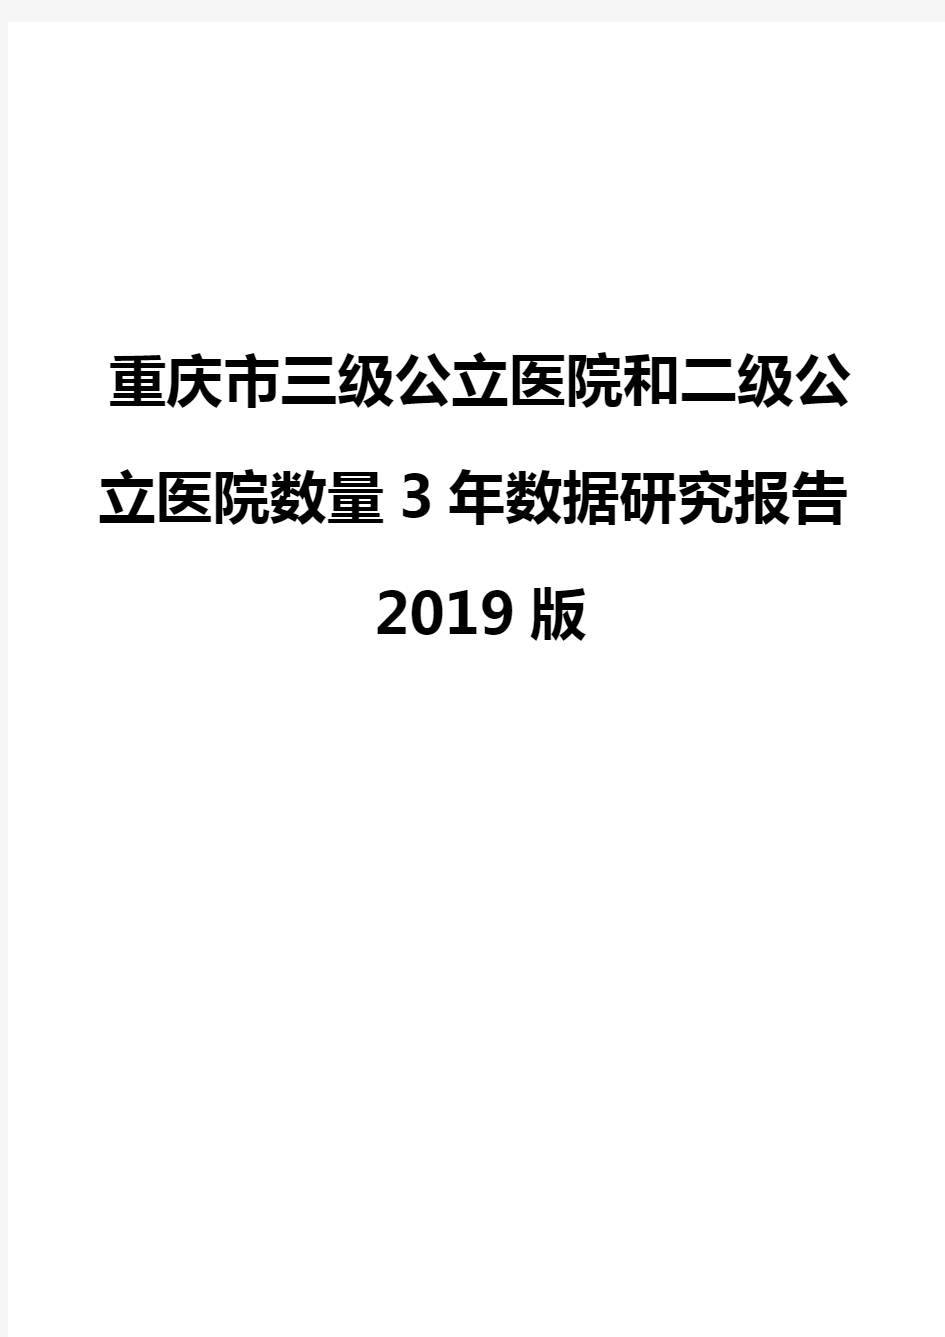 重庆市三级公立医院和二级公立医院数量3年数据研究报告2019版